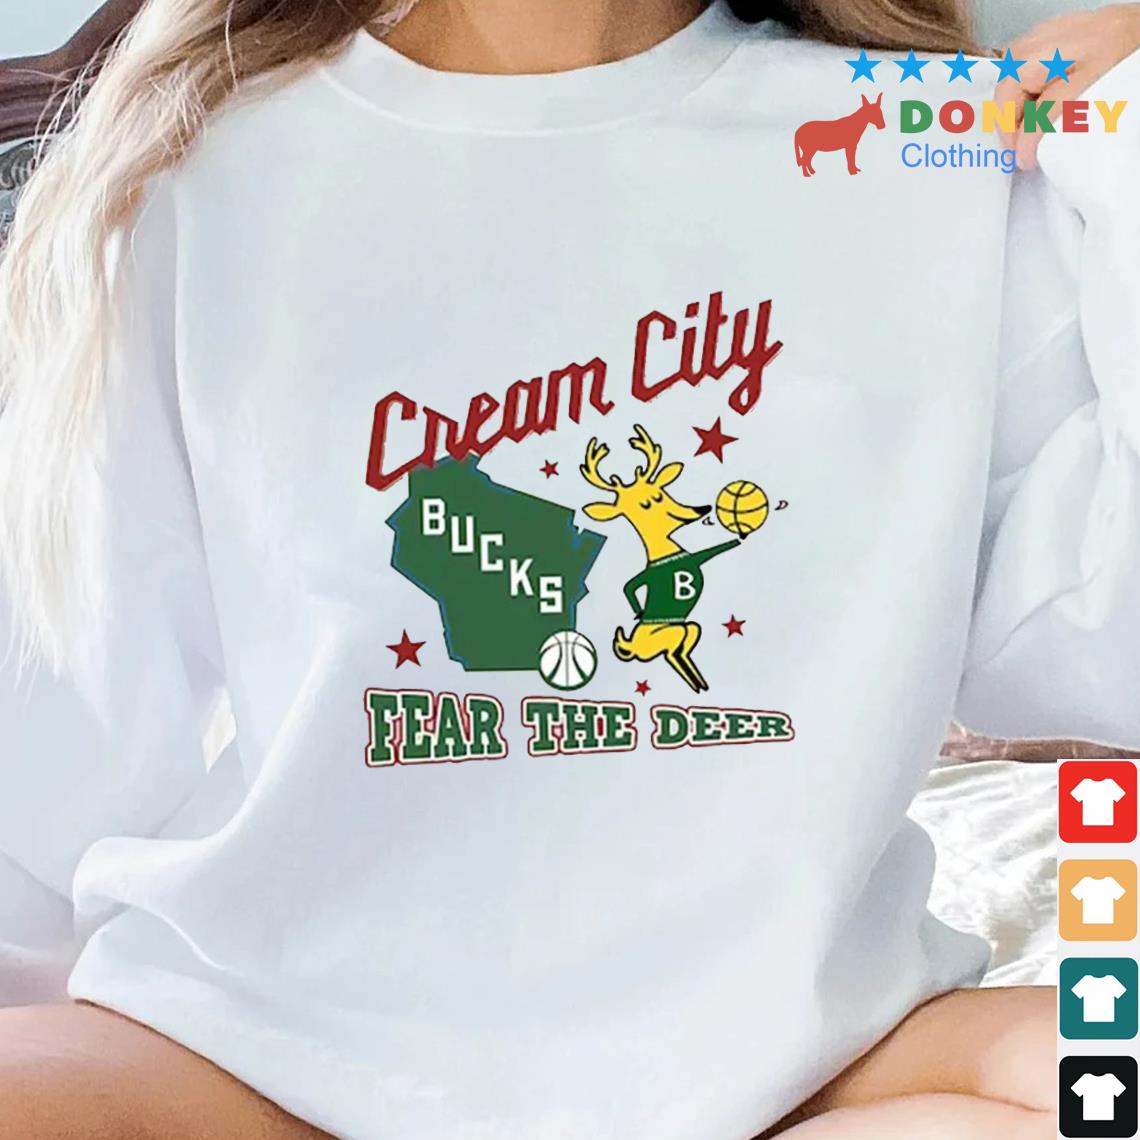 Cream City Milwaukee Bucks Fear The Deer Basketball Shirt